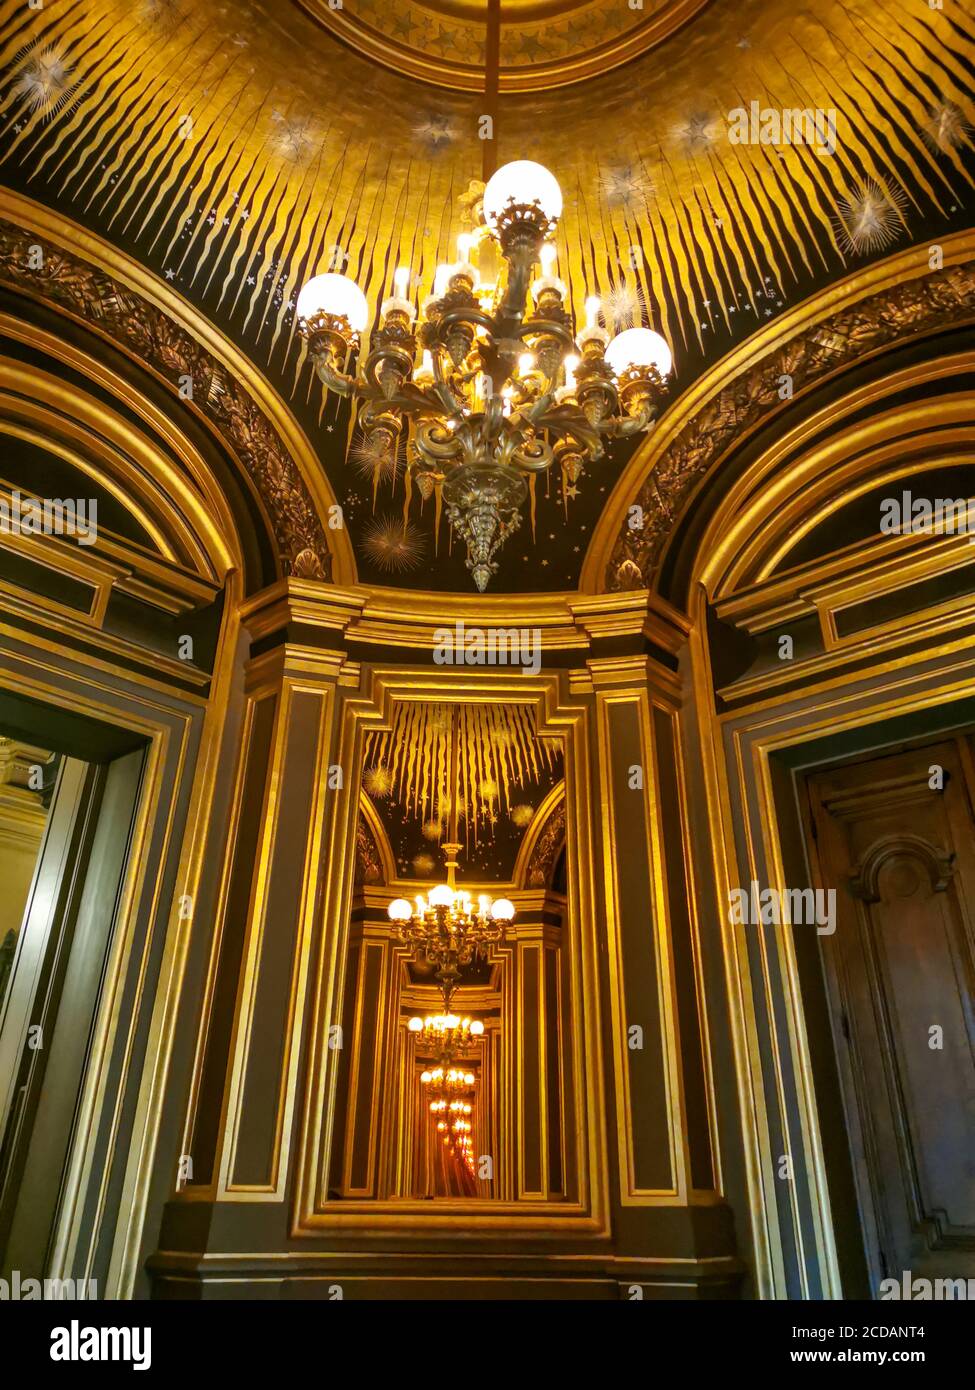 La ópera nacional francesa Garnier y su hermosa arquitectura Foto de stock